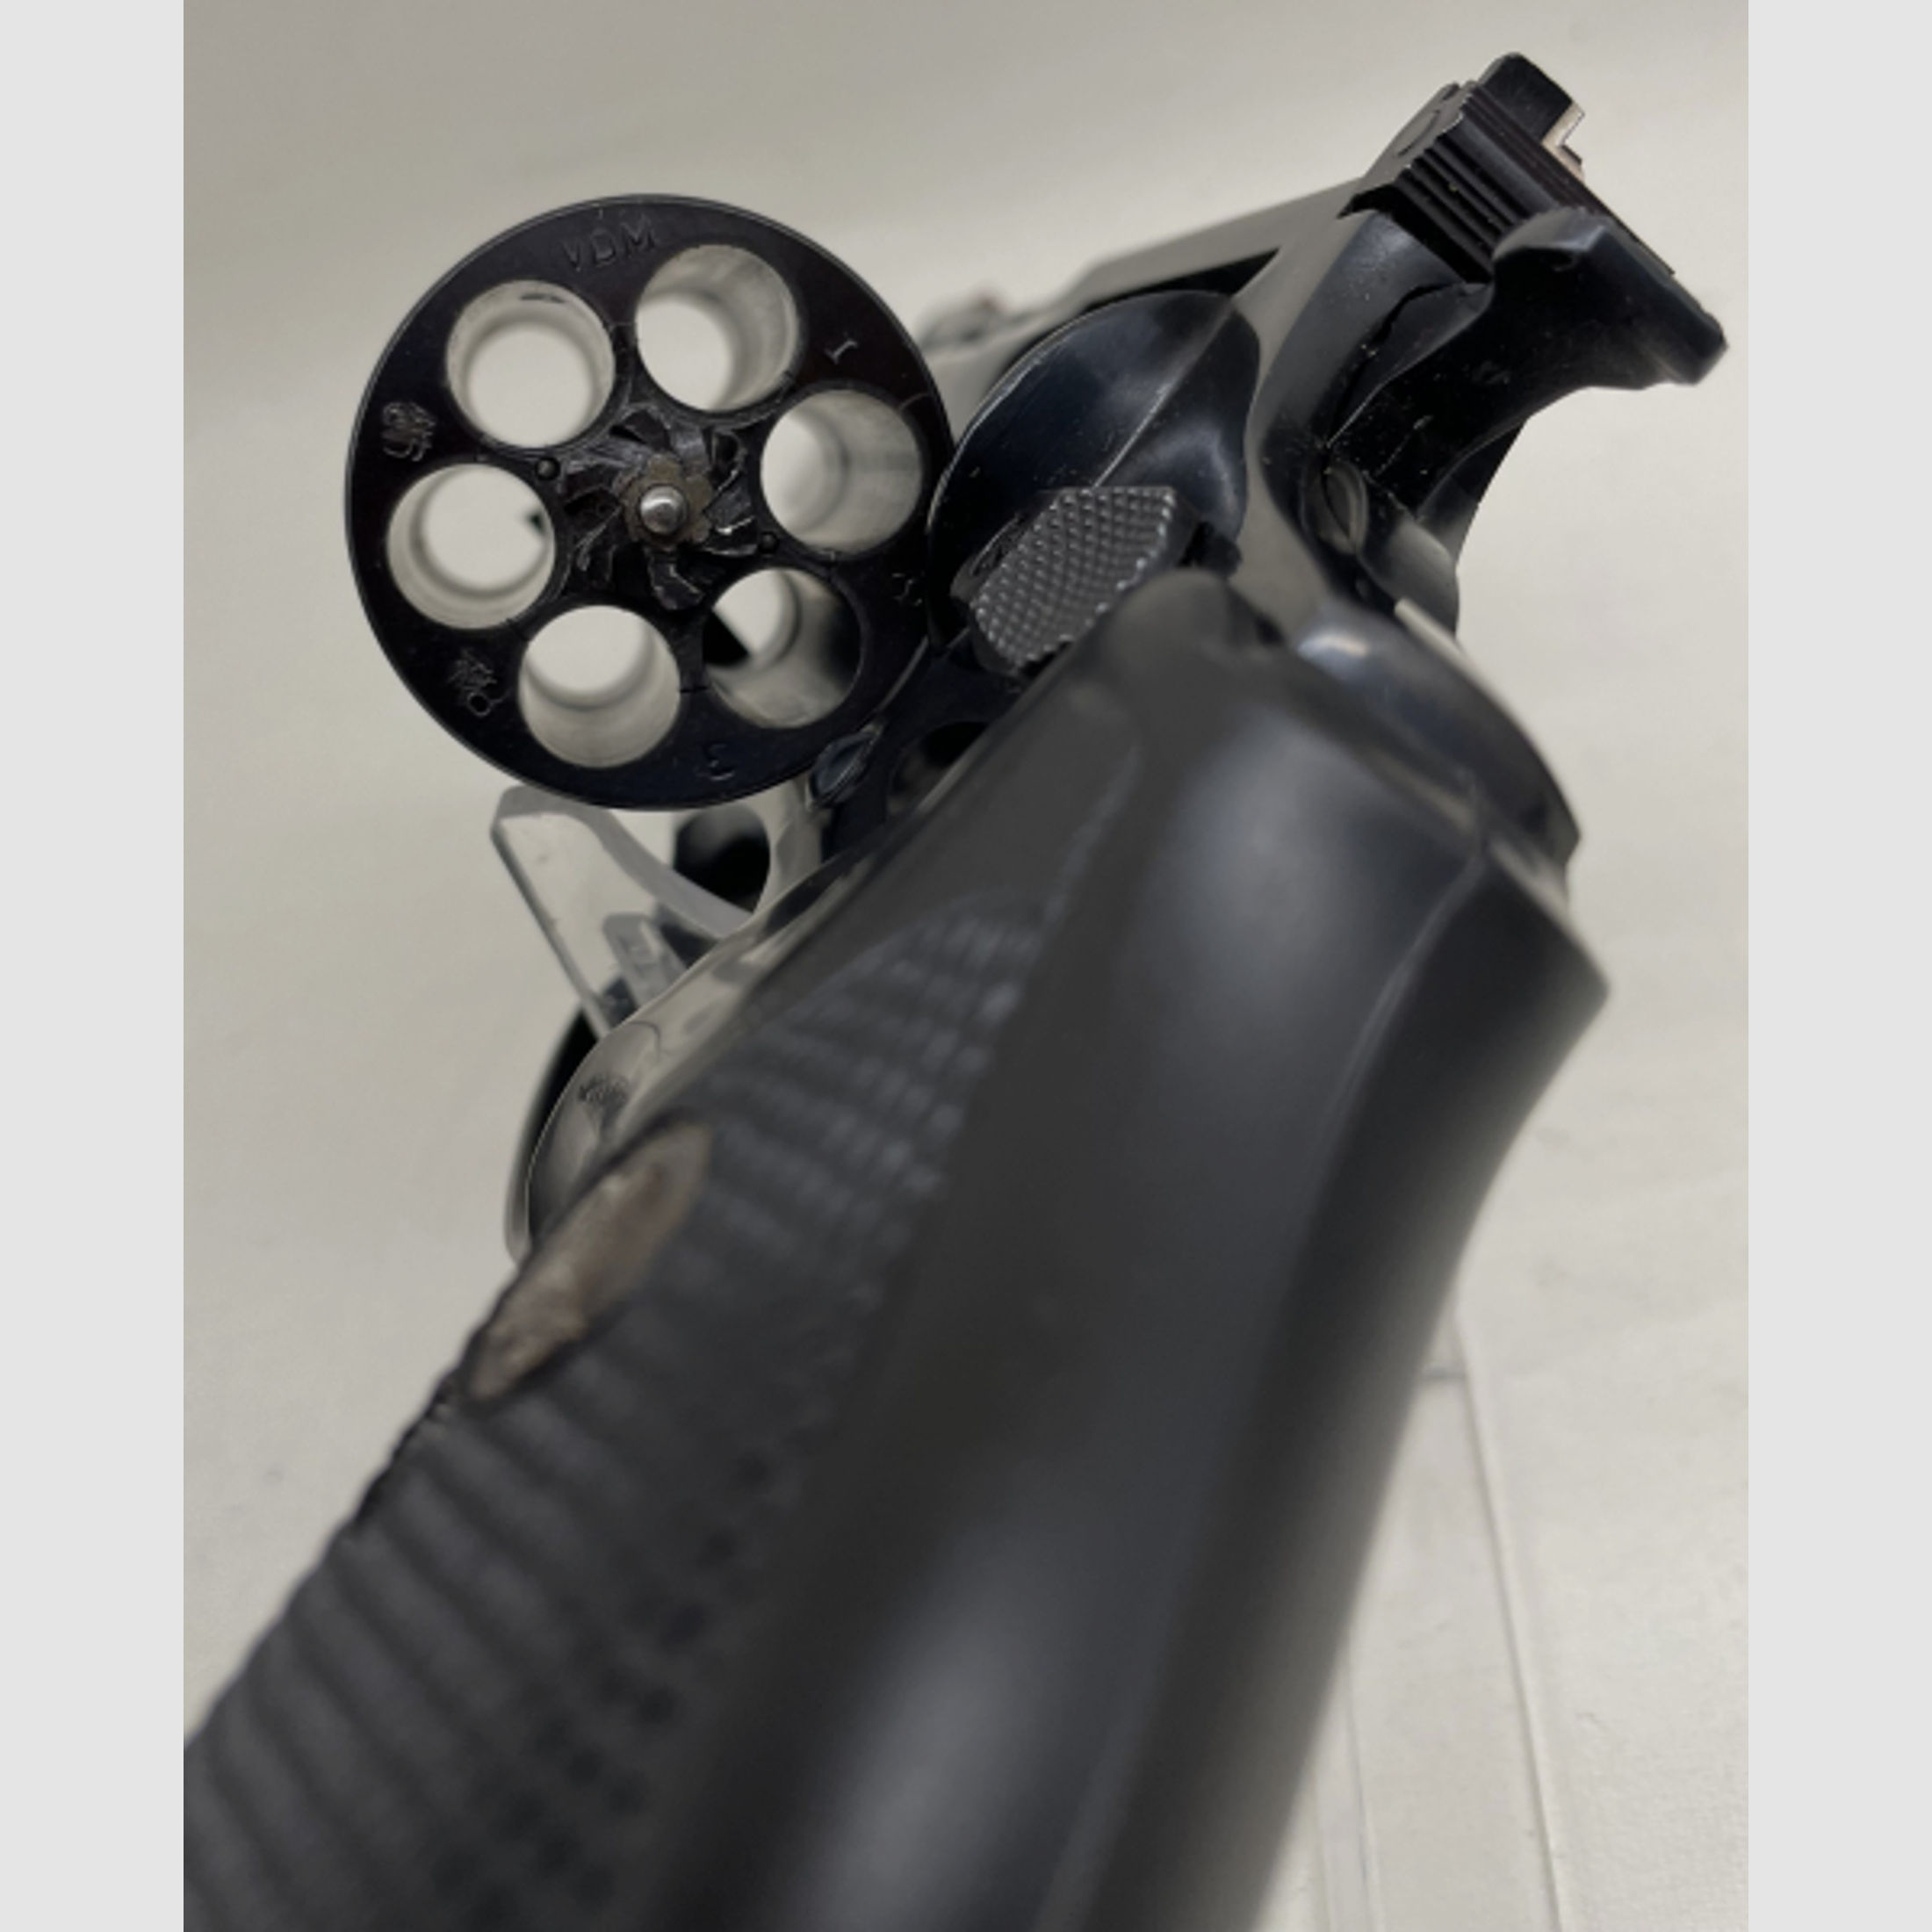 Rossi Revolver Mod. 951 4" Kal. 38Spez.